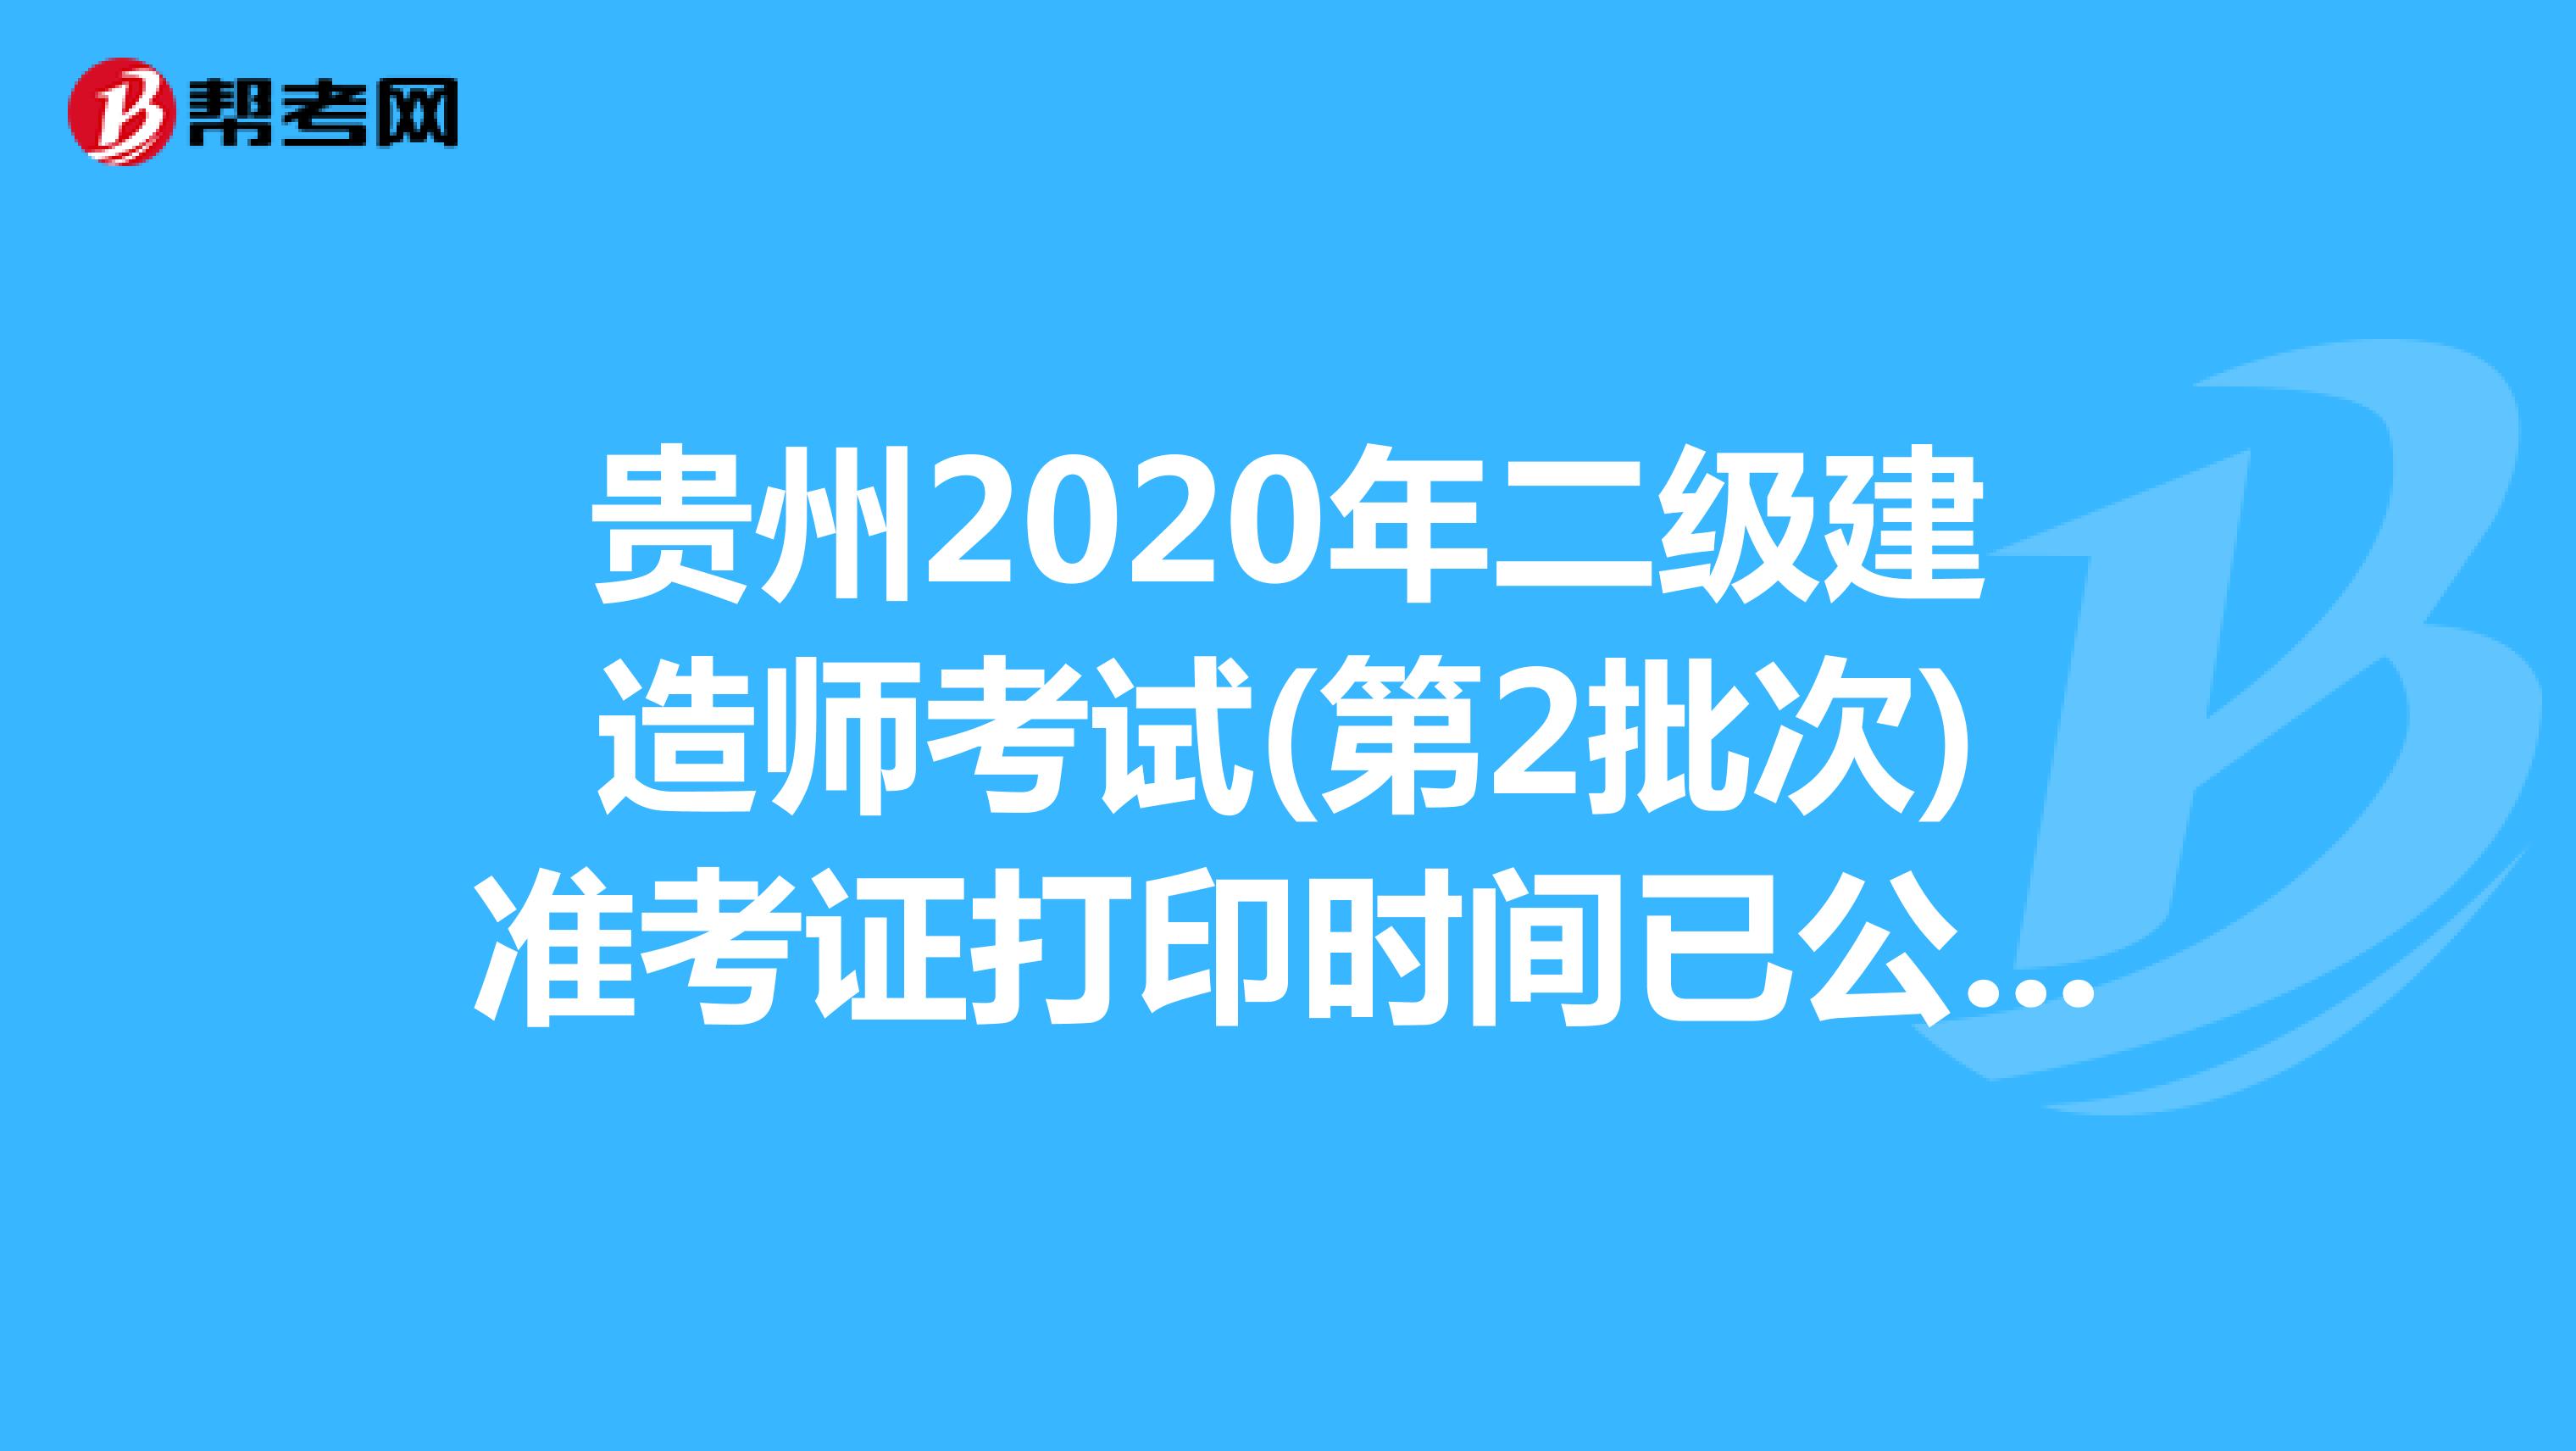 贵州2020年二级建造师考试(第2批次)准考证打印时间已公布(4月12日-18日)